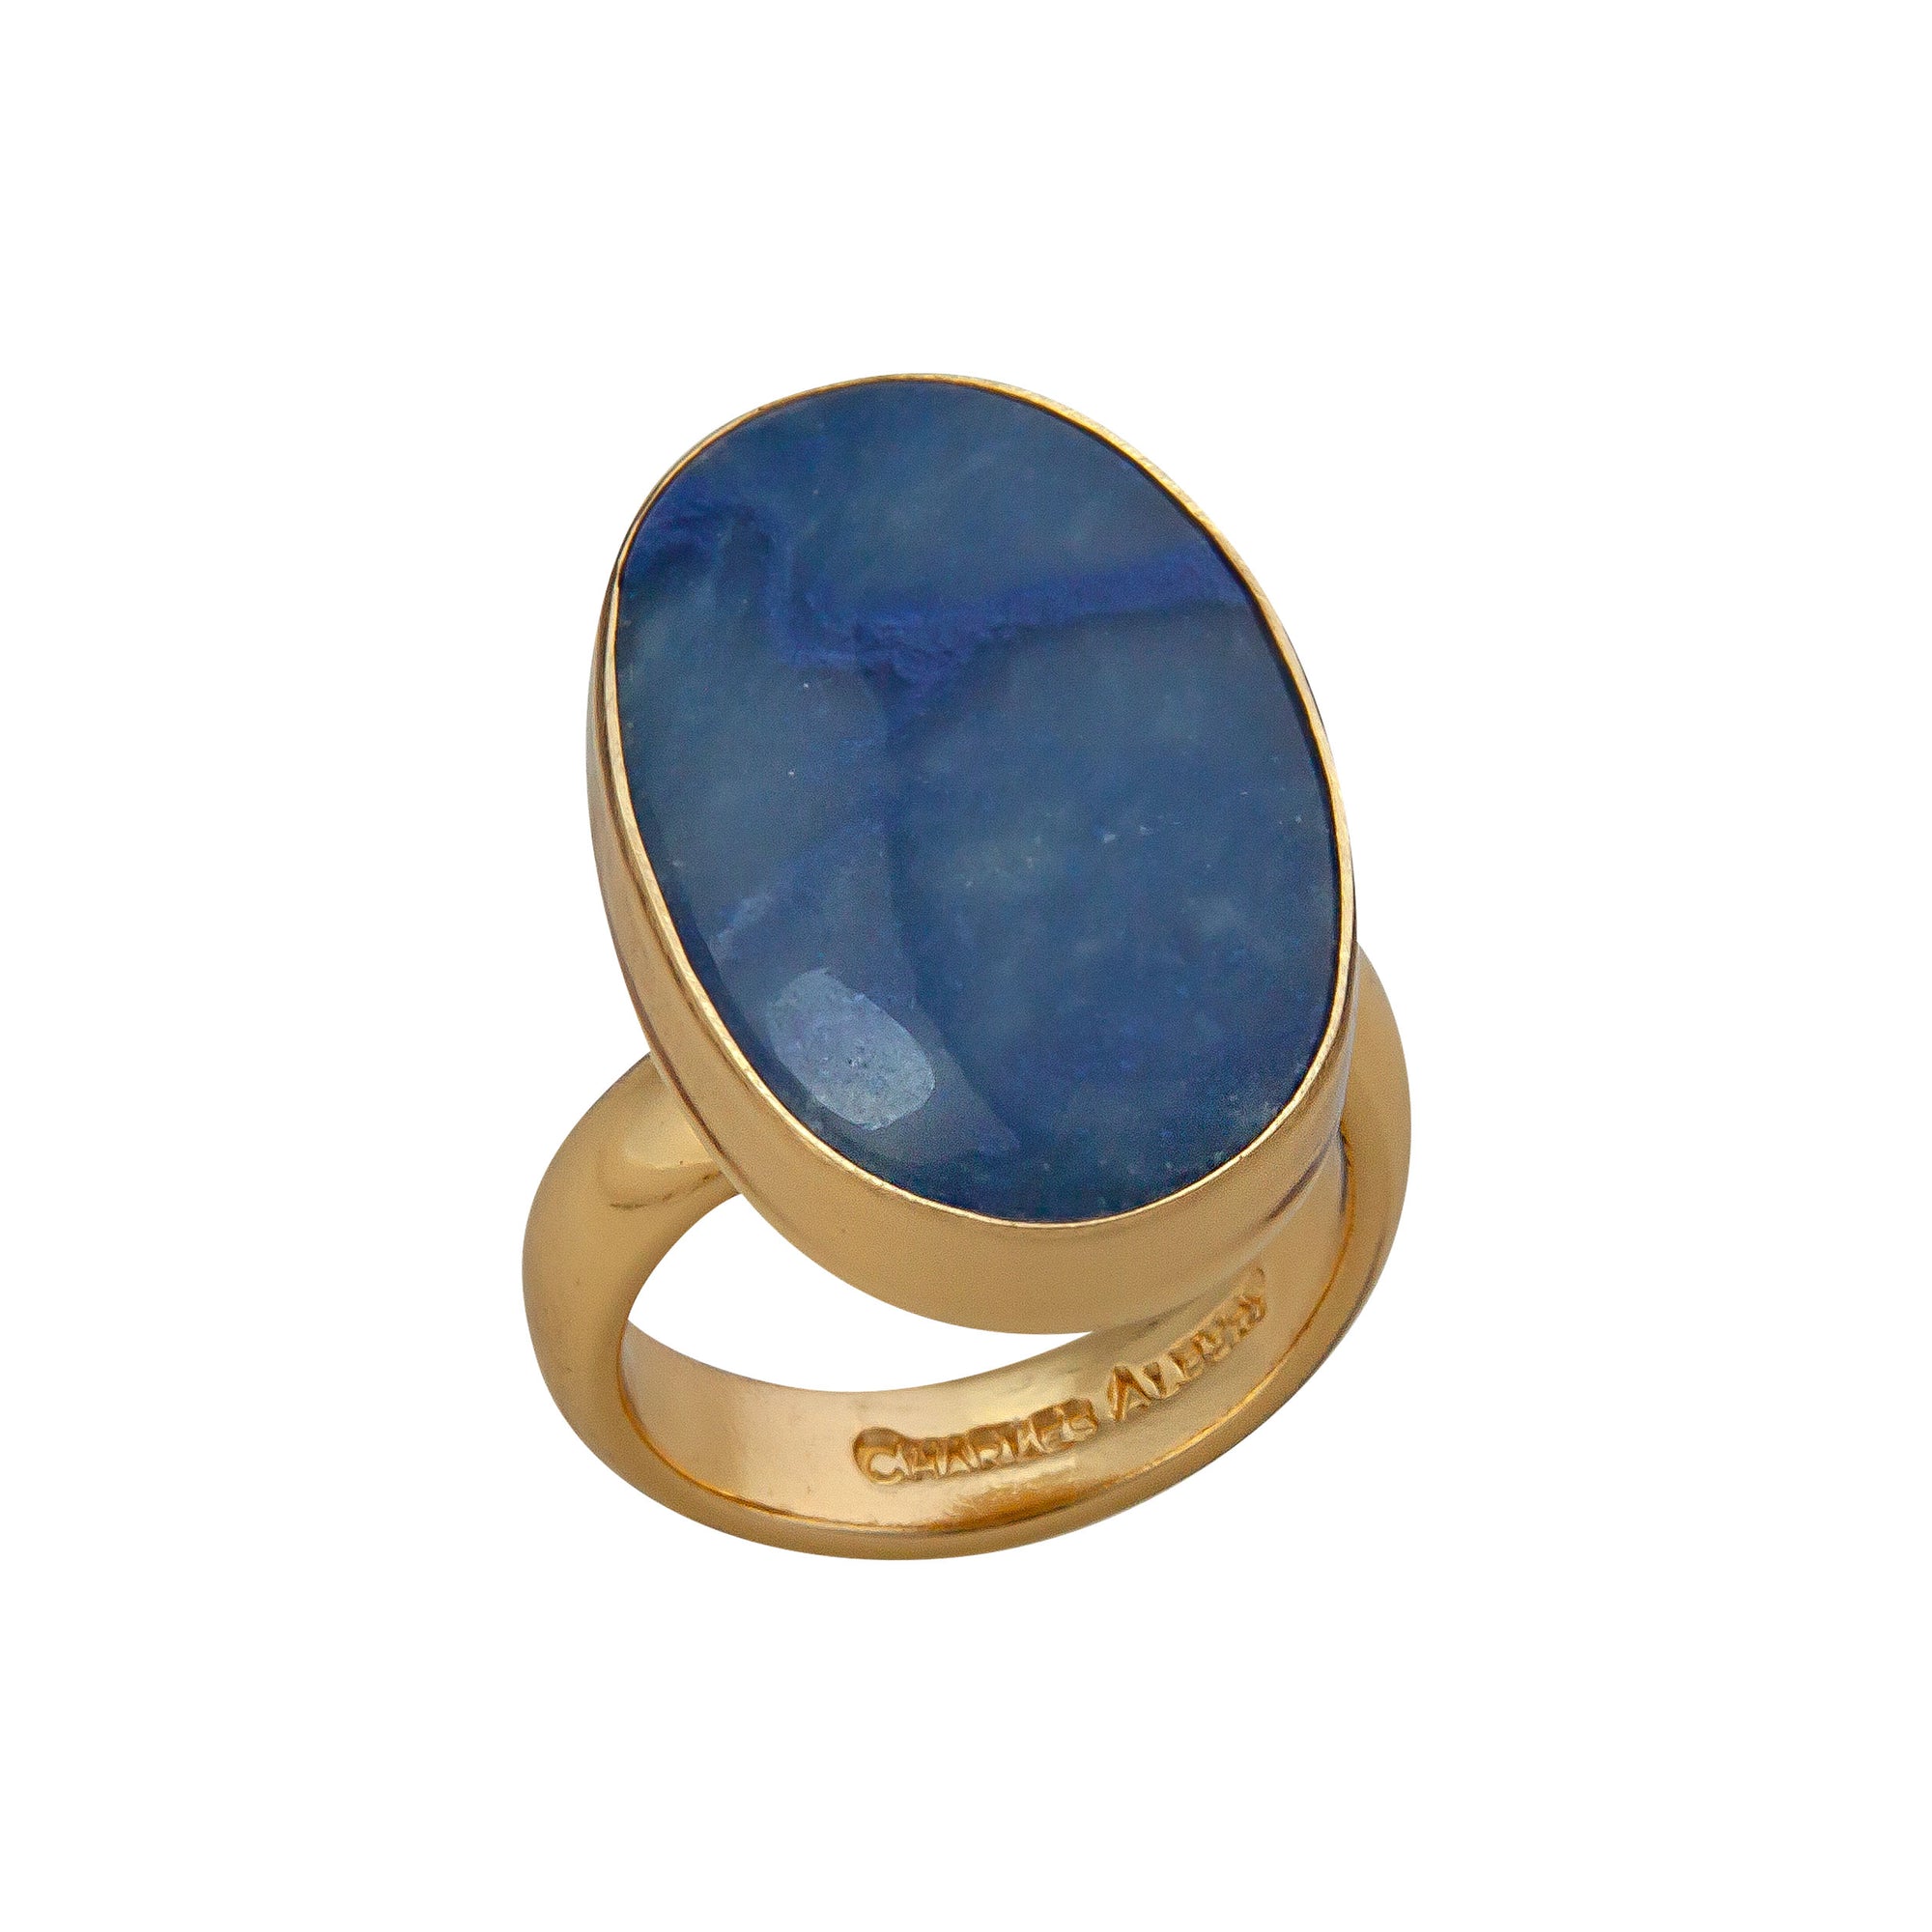 Buy Dark Blue Aventurinegemstone Men's Ring,goldstone Ring, Sunstone  Valentine's Gift for Men, Crown Style Rings for Men Online in India - Etsy